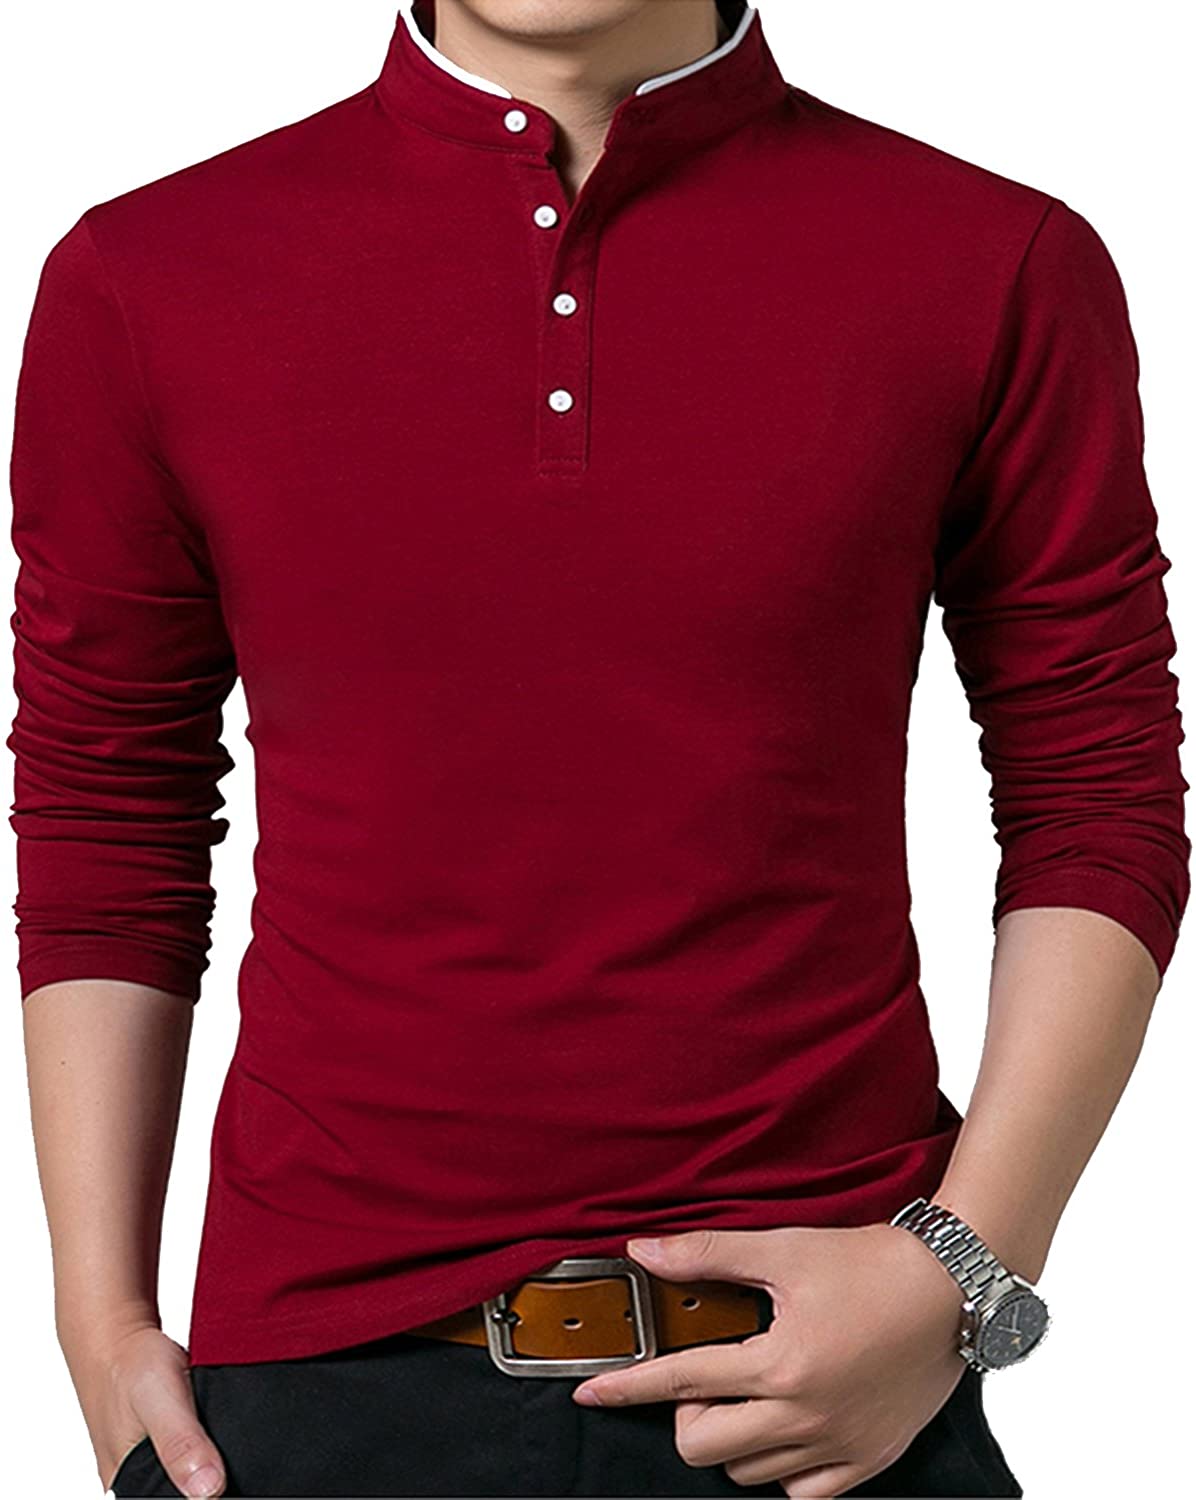 KUYIGO Men's Short & Long Sleeve Polo Shirts Casual Slim Fit Basic Designed Cotton Shirts 